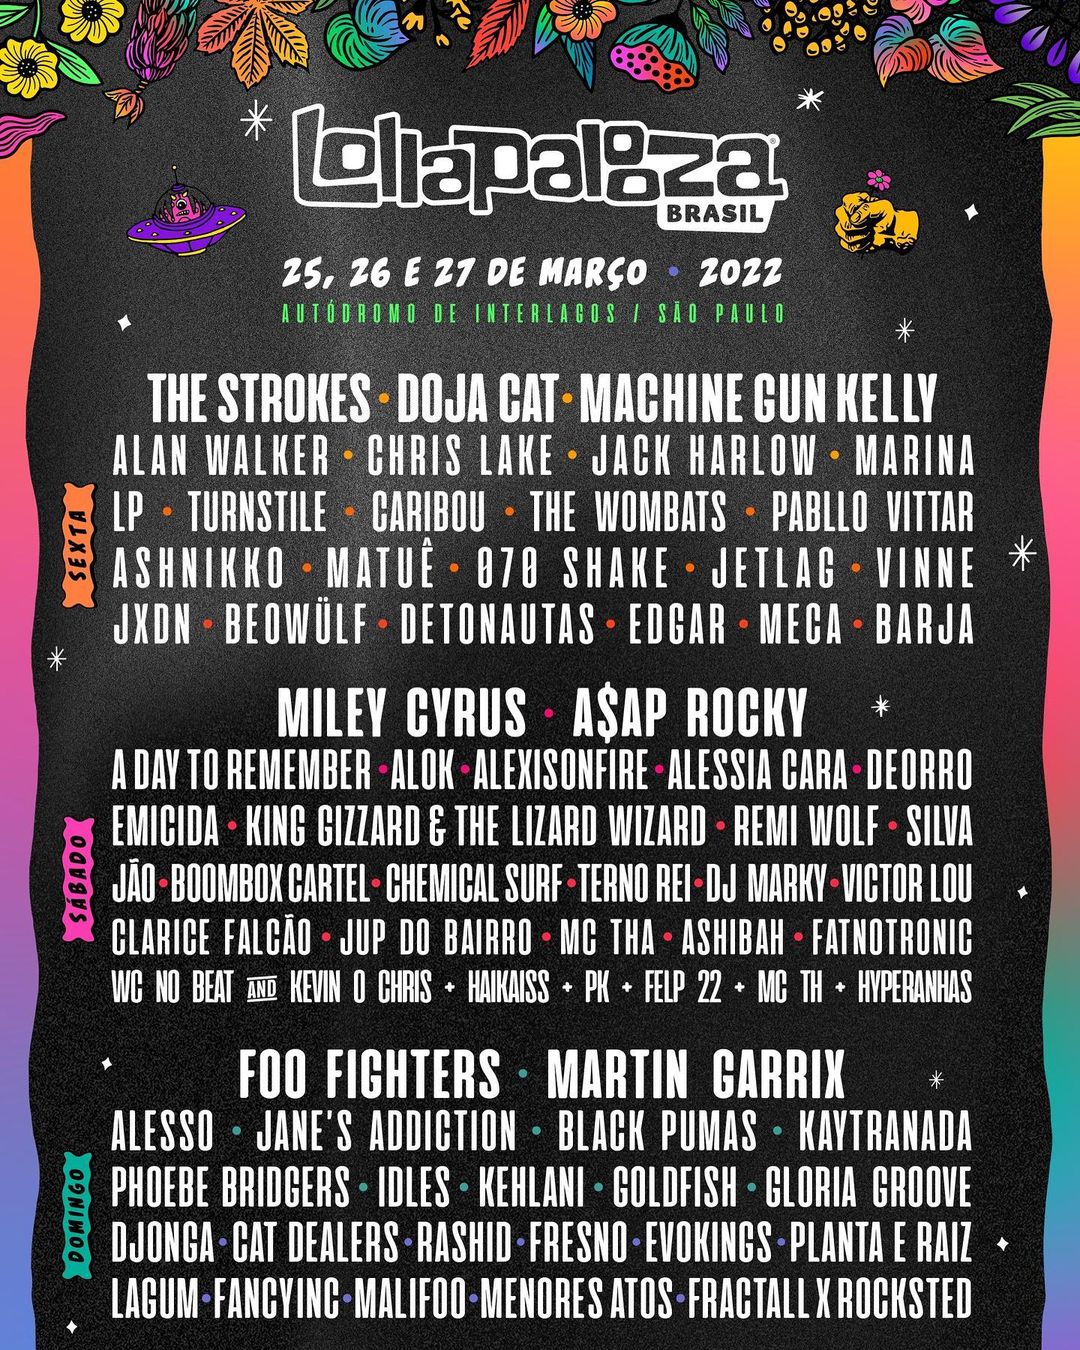 Estos son los artistas que harán parte del Lollapalooza 2022